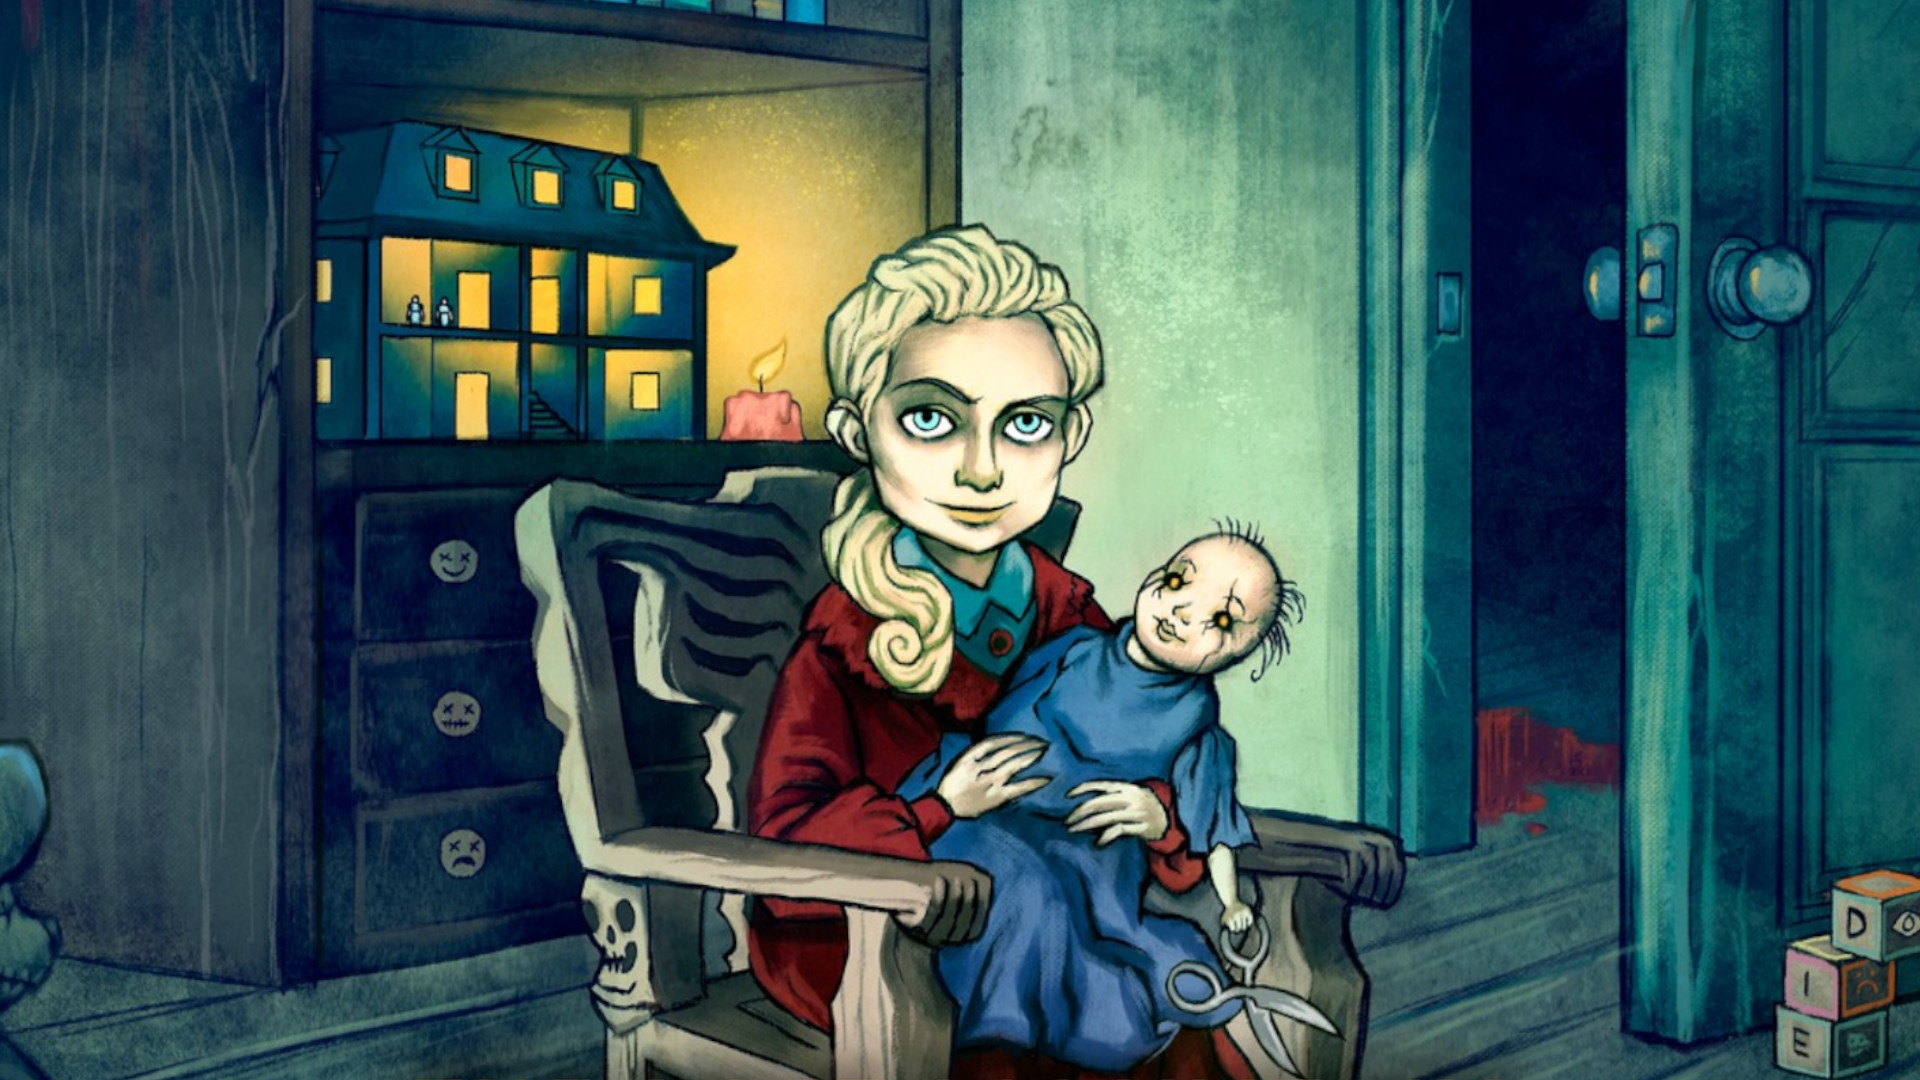 Une jeune fille blonde est assise sur une chaise à bascule, une poupée effrayante à la main.